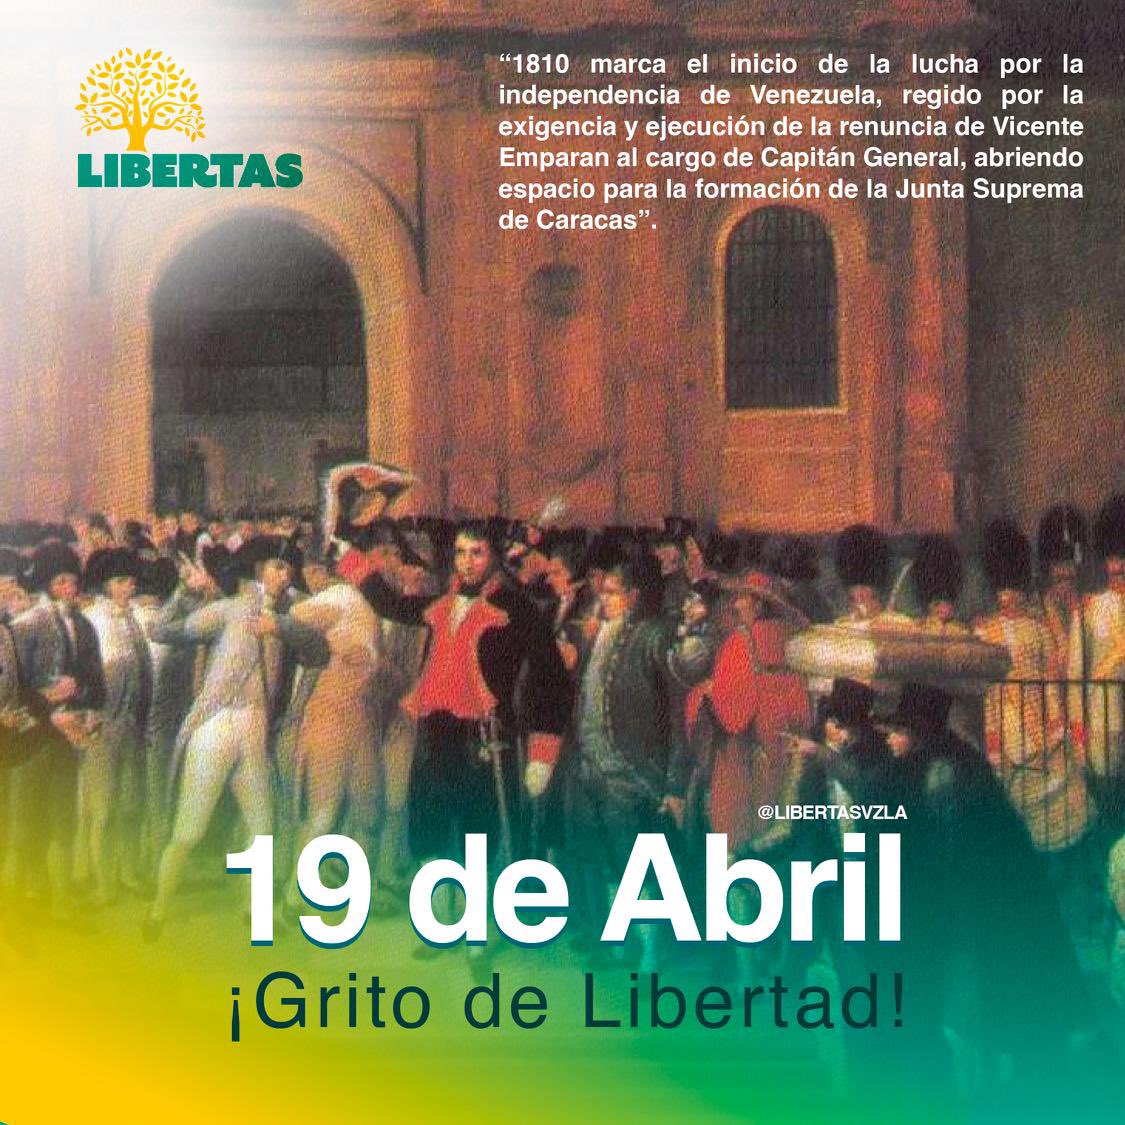 #19deAbril | En el día de la independencia de Venezuela, recordamos el coraje de nuestros ancestros para liberarse del yugo español. Aunque enfrentamos desafíos actuales, con unidad y firmeza, podemos forjar un mañana donde la libertad y la justicia sean pilares inquebrantables.